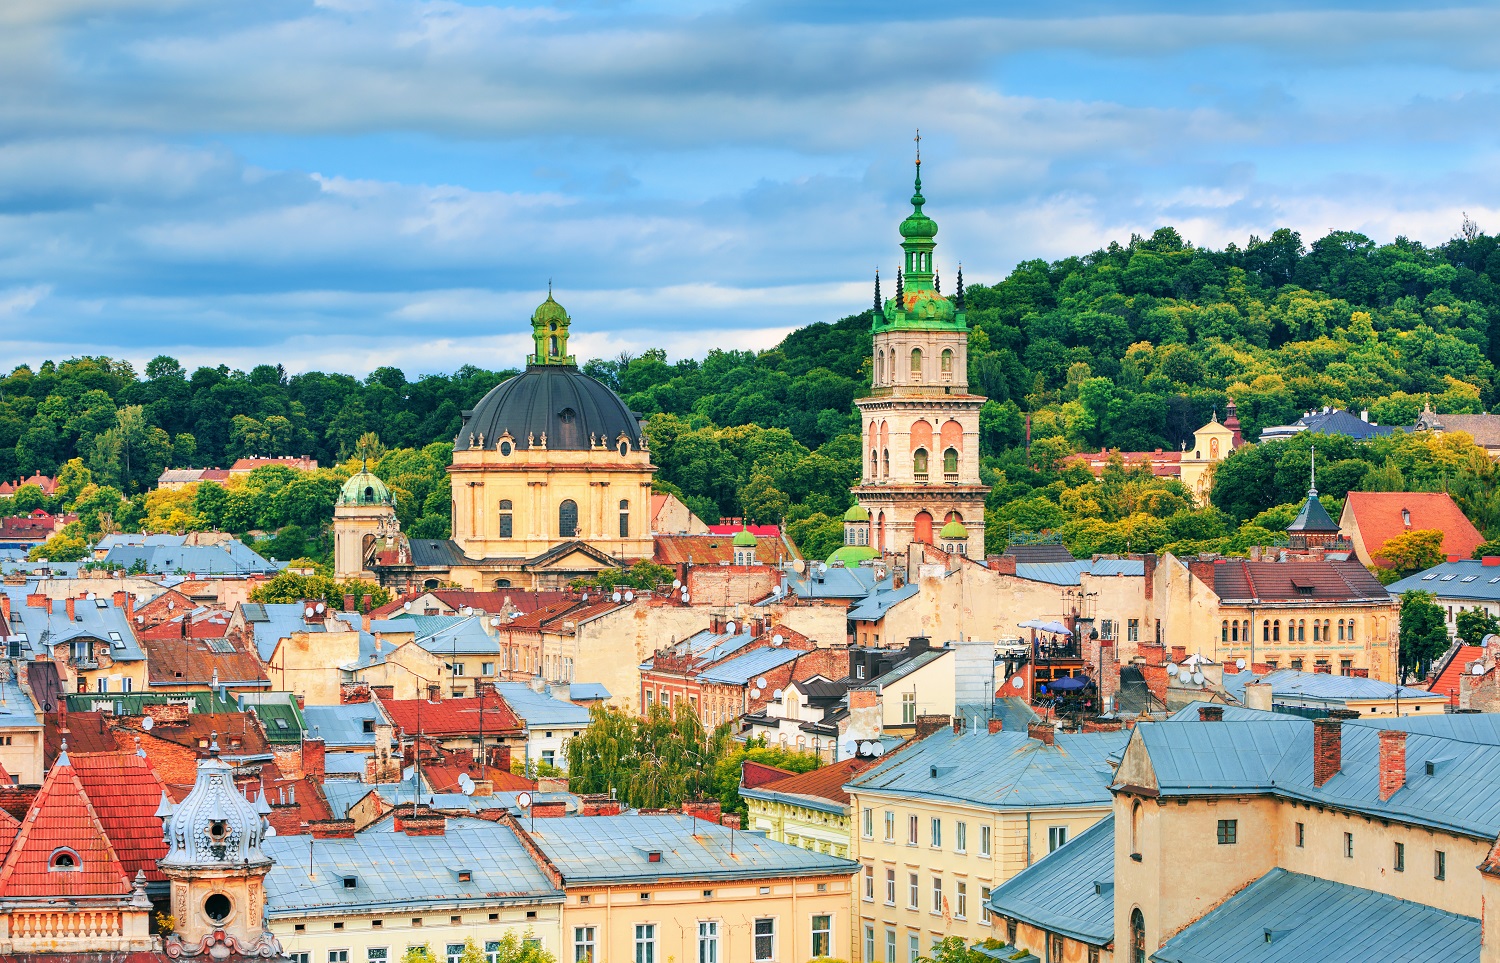 The skyline of Lviv, Ukraine.